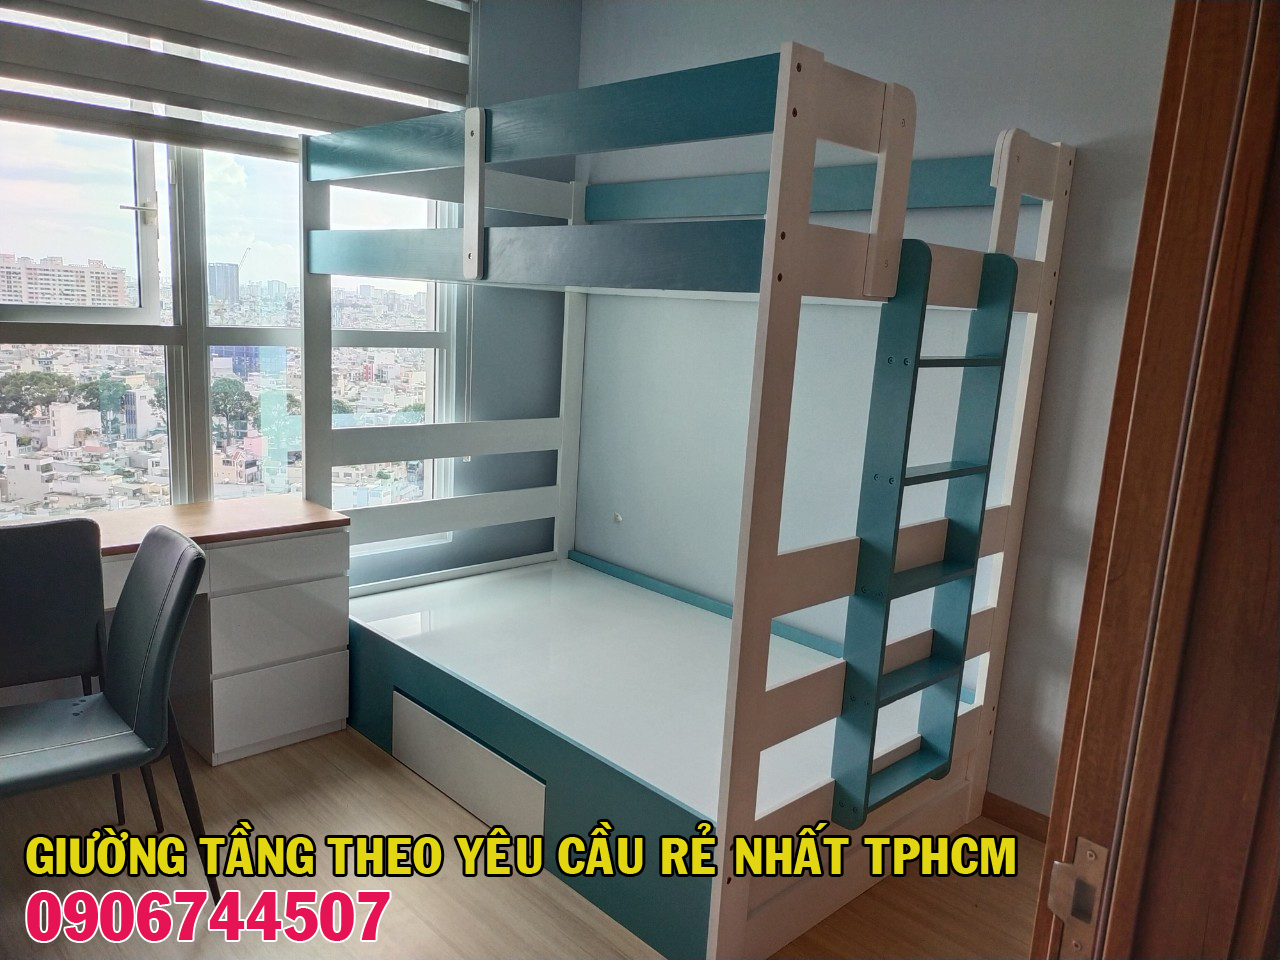 Đóng giường 2 tầng theo yêu cầu tại Quận Phú Nhuận - TPHCM 2021